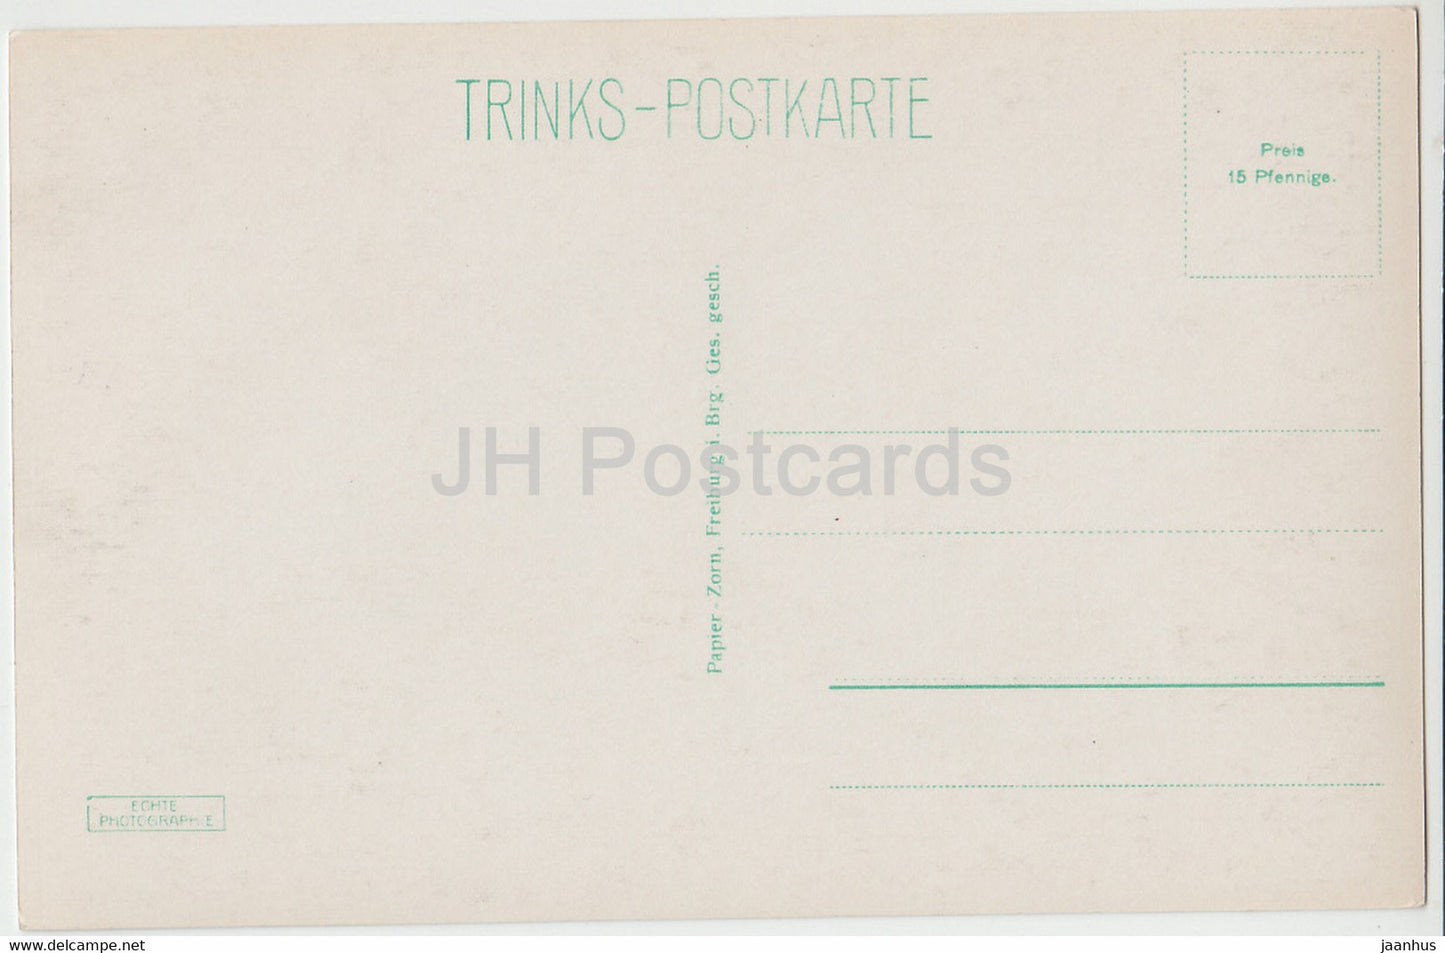 Freiburg i Breisgau - Kaufhaus - 11 - old postcard - Germany - unused